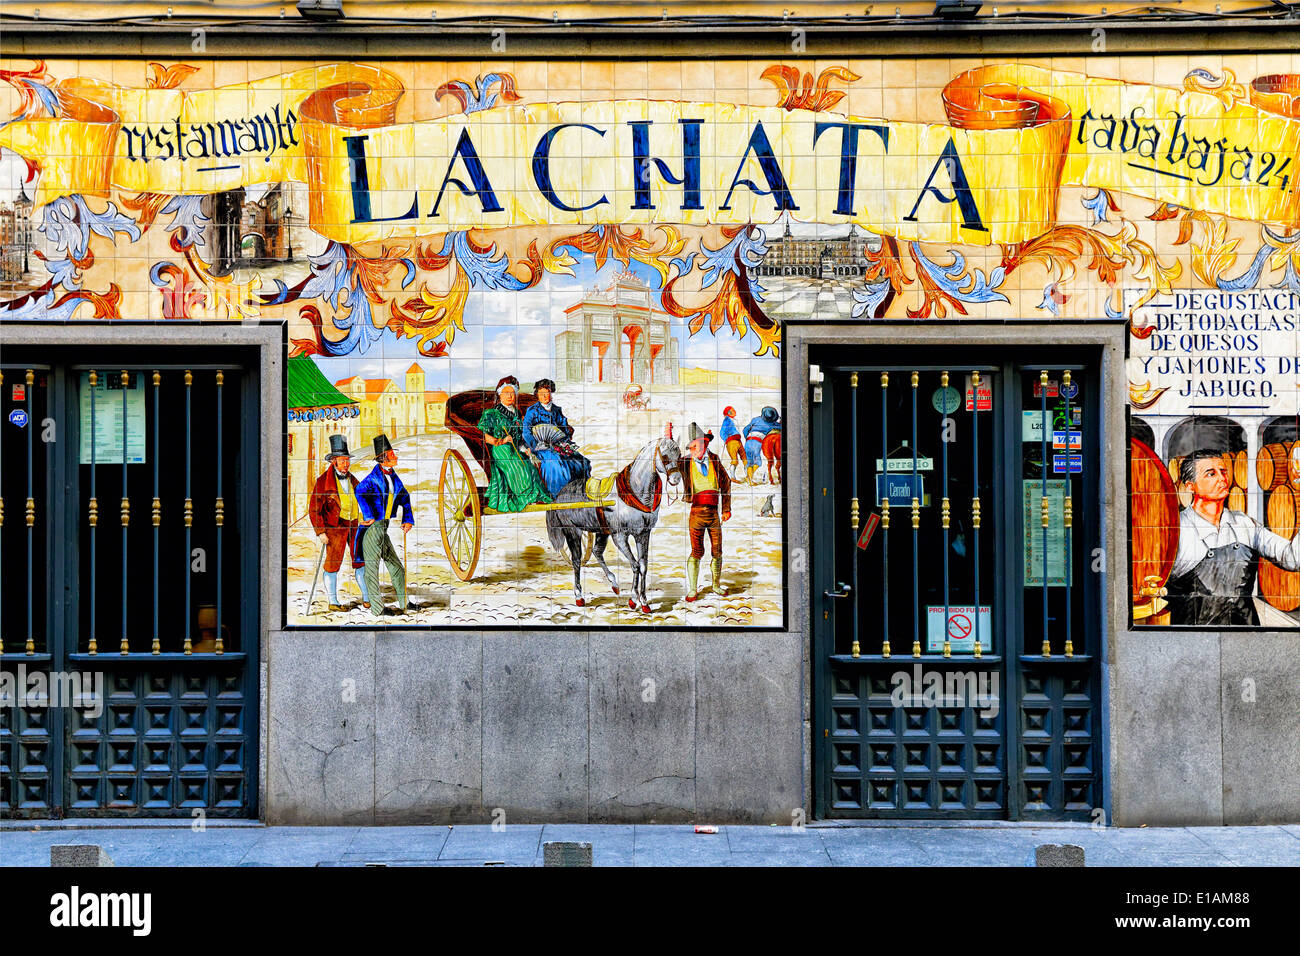 Voir l'entrée d'un restaurant à tapas La Chata avec carreaux ornementaux façade, Madrid, Espagne Banque D'Images